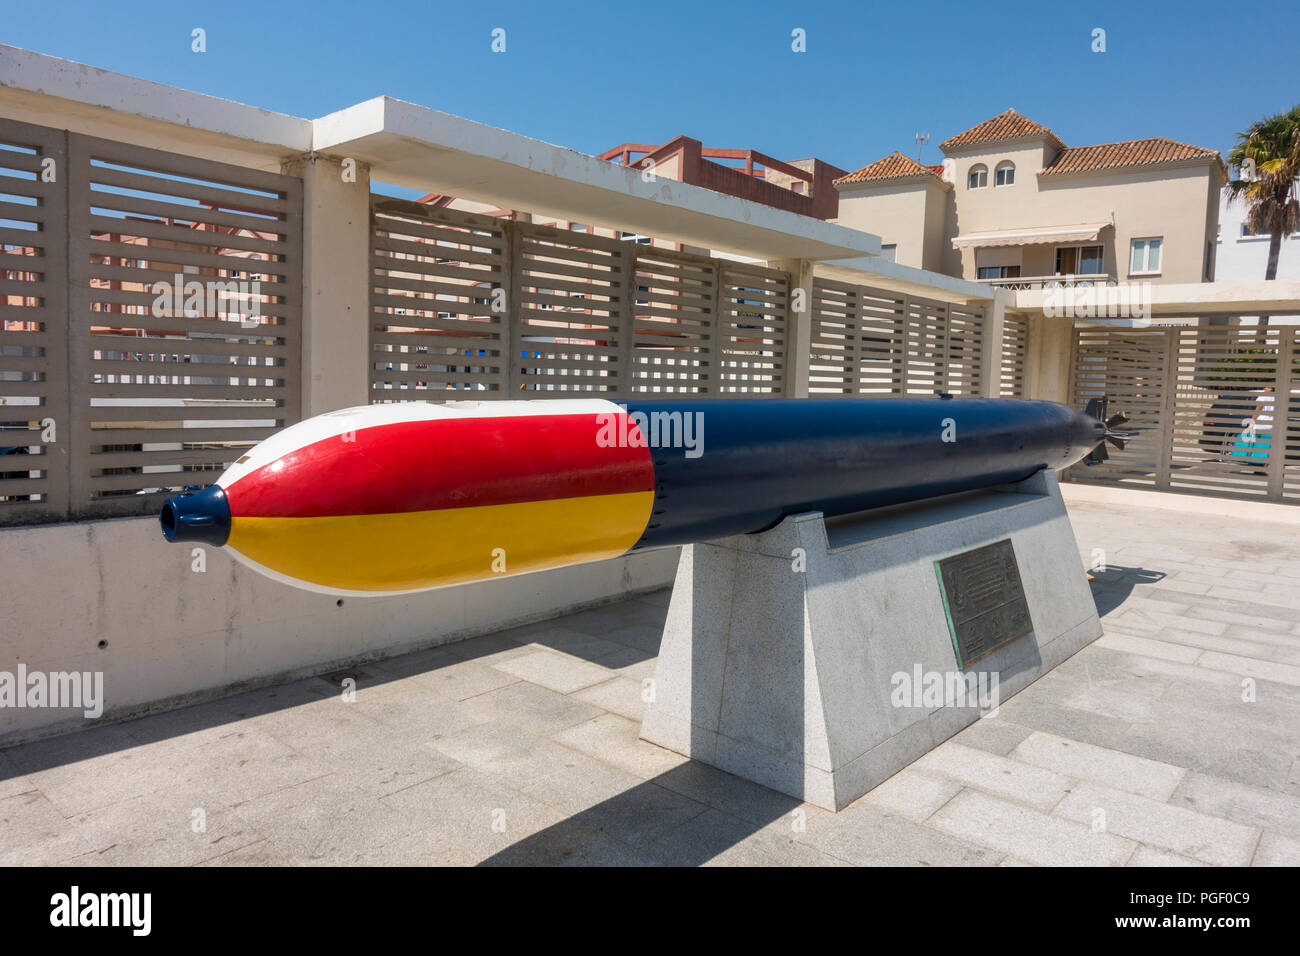 Coloré et vintage de la marine espagnole propulsés sur l'affichage d'une torpille à l'entrée du port, Tarifa, Costa de la luz, espagne. Banque D'Images